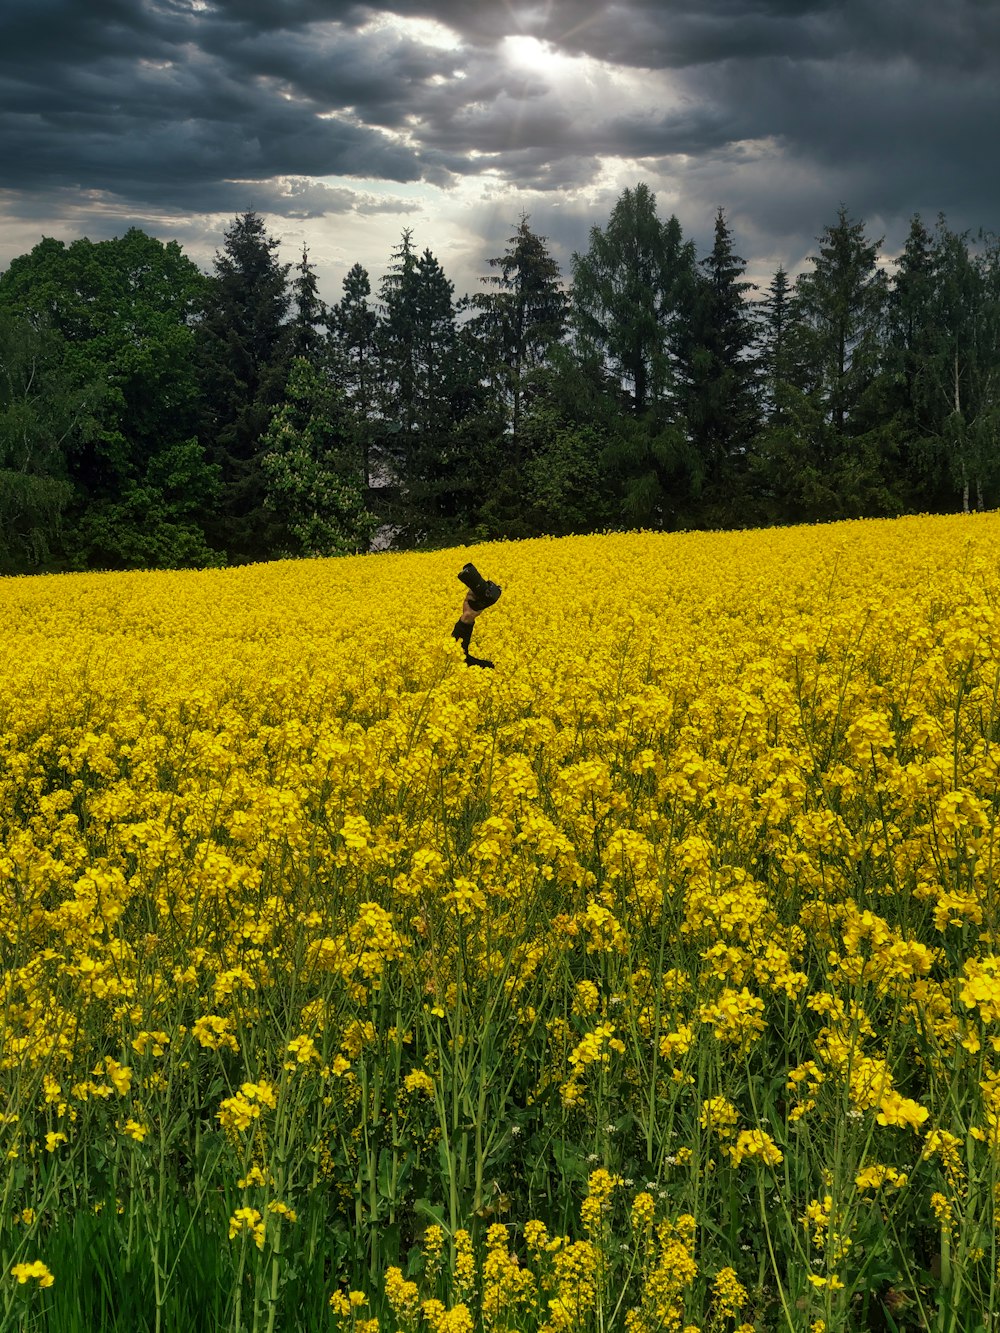 Ein Feld voller gelber Blumen unter einem bewölkten Himmel